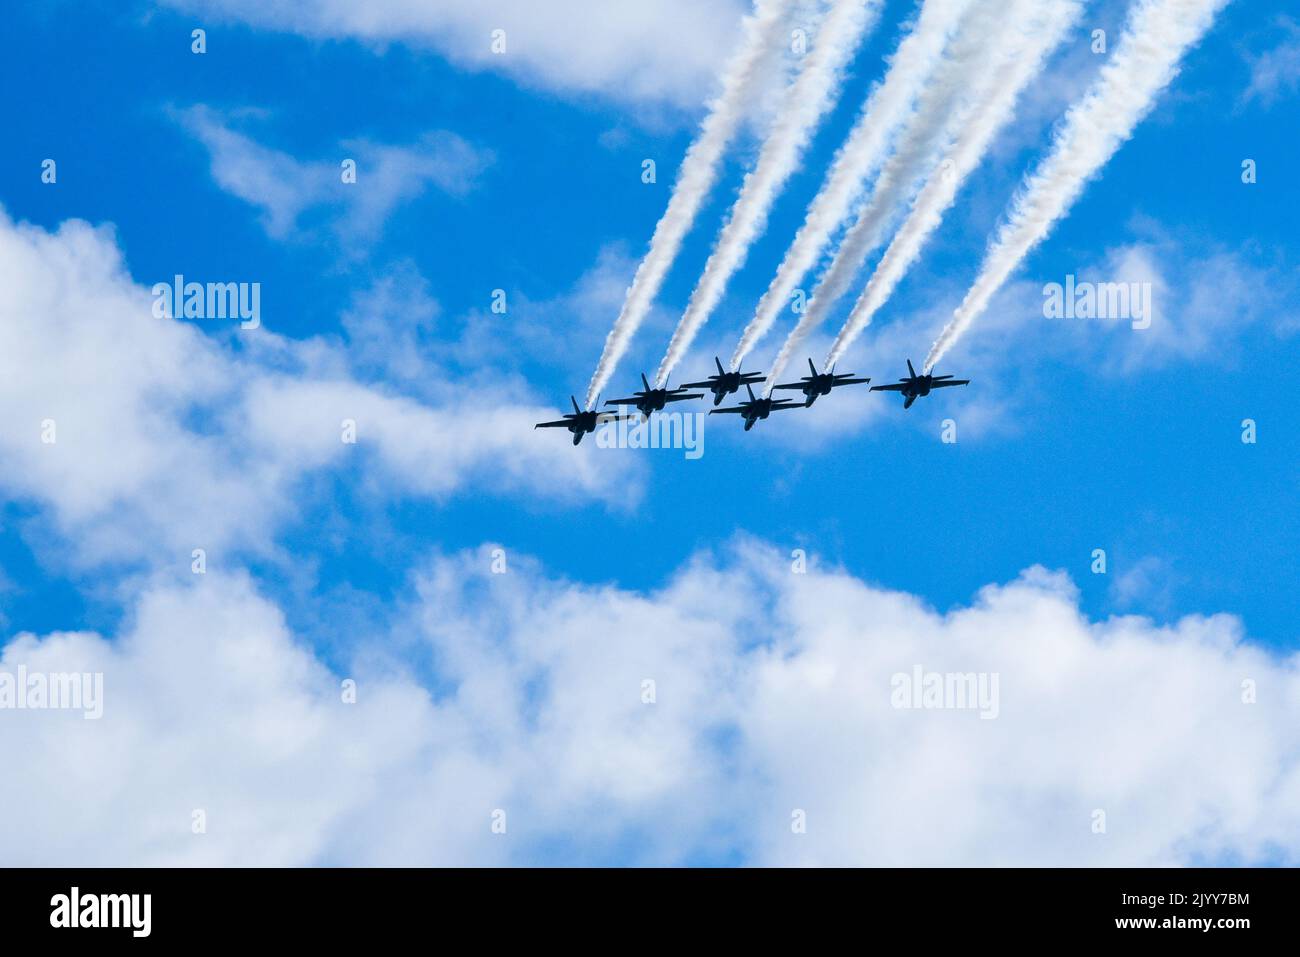 Gli U.S. Navy Blue Angels sono arrivati qui e hanno iniziato i loro voli di orientamento per prepararsi allo Smoky Mountain Air Show. L'Air Show si svolge dal 10th al 11th settembre. (STATI UNITI Air National Guard foto di staff Sgt. Brandon Keys.) Foto Stock